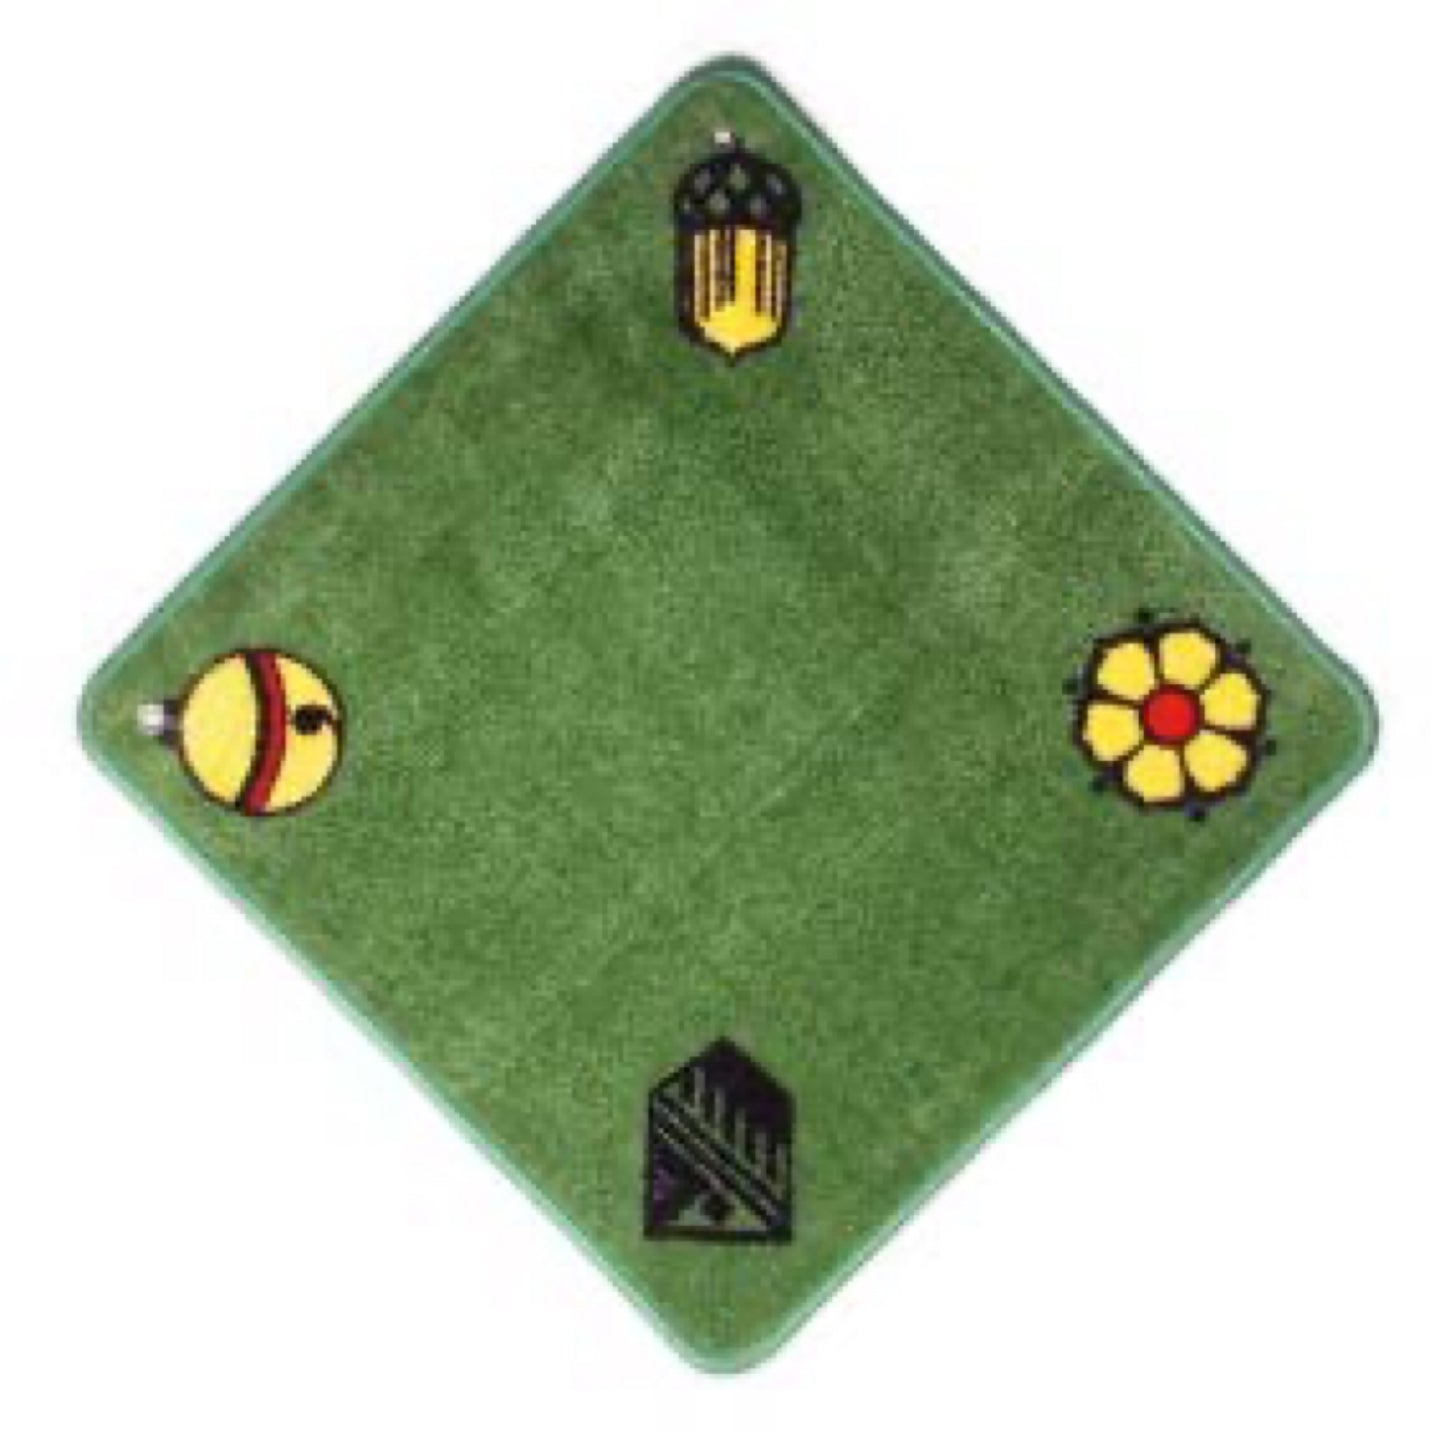 Green Jass rug - Jass symbol